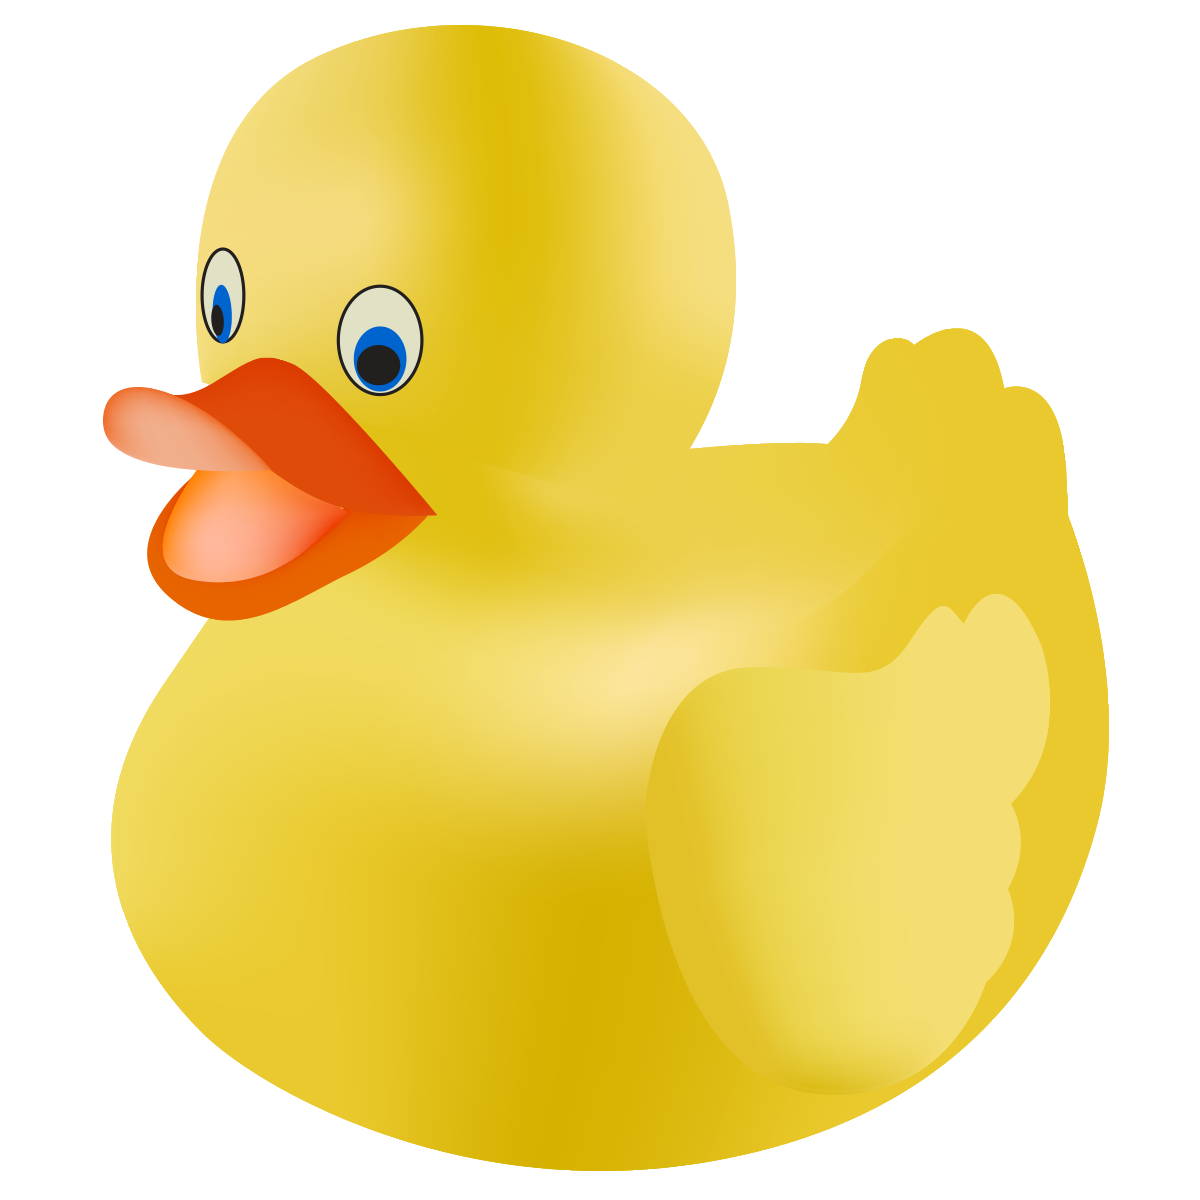 Rubber Duck Clip Art - Rubber Ducky Clip Art